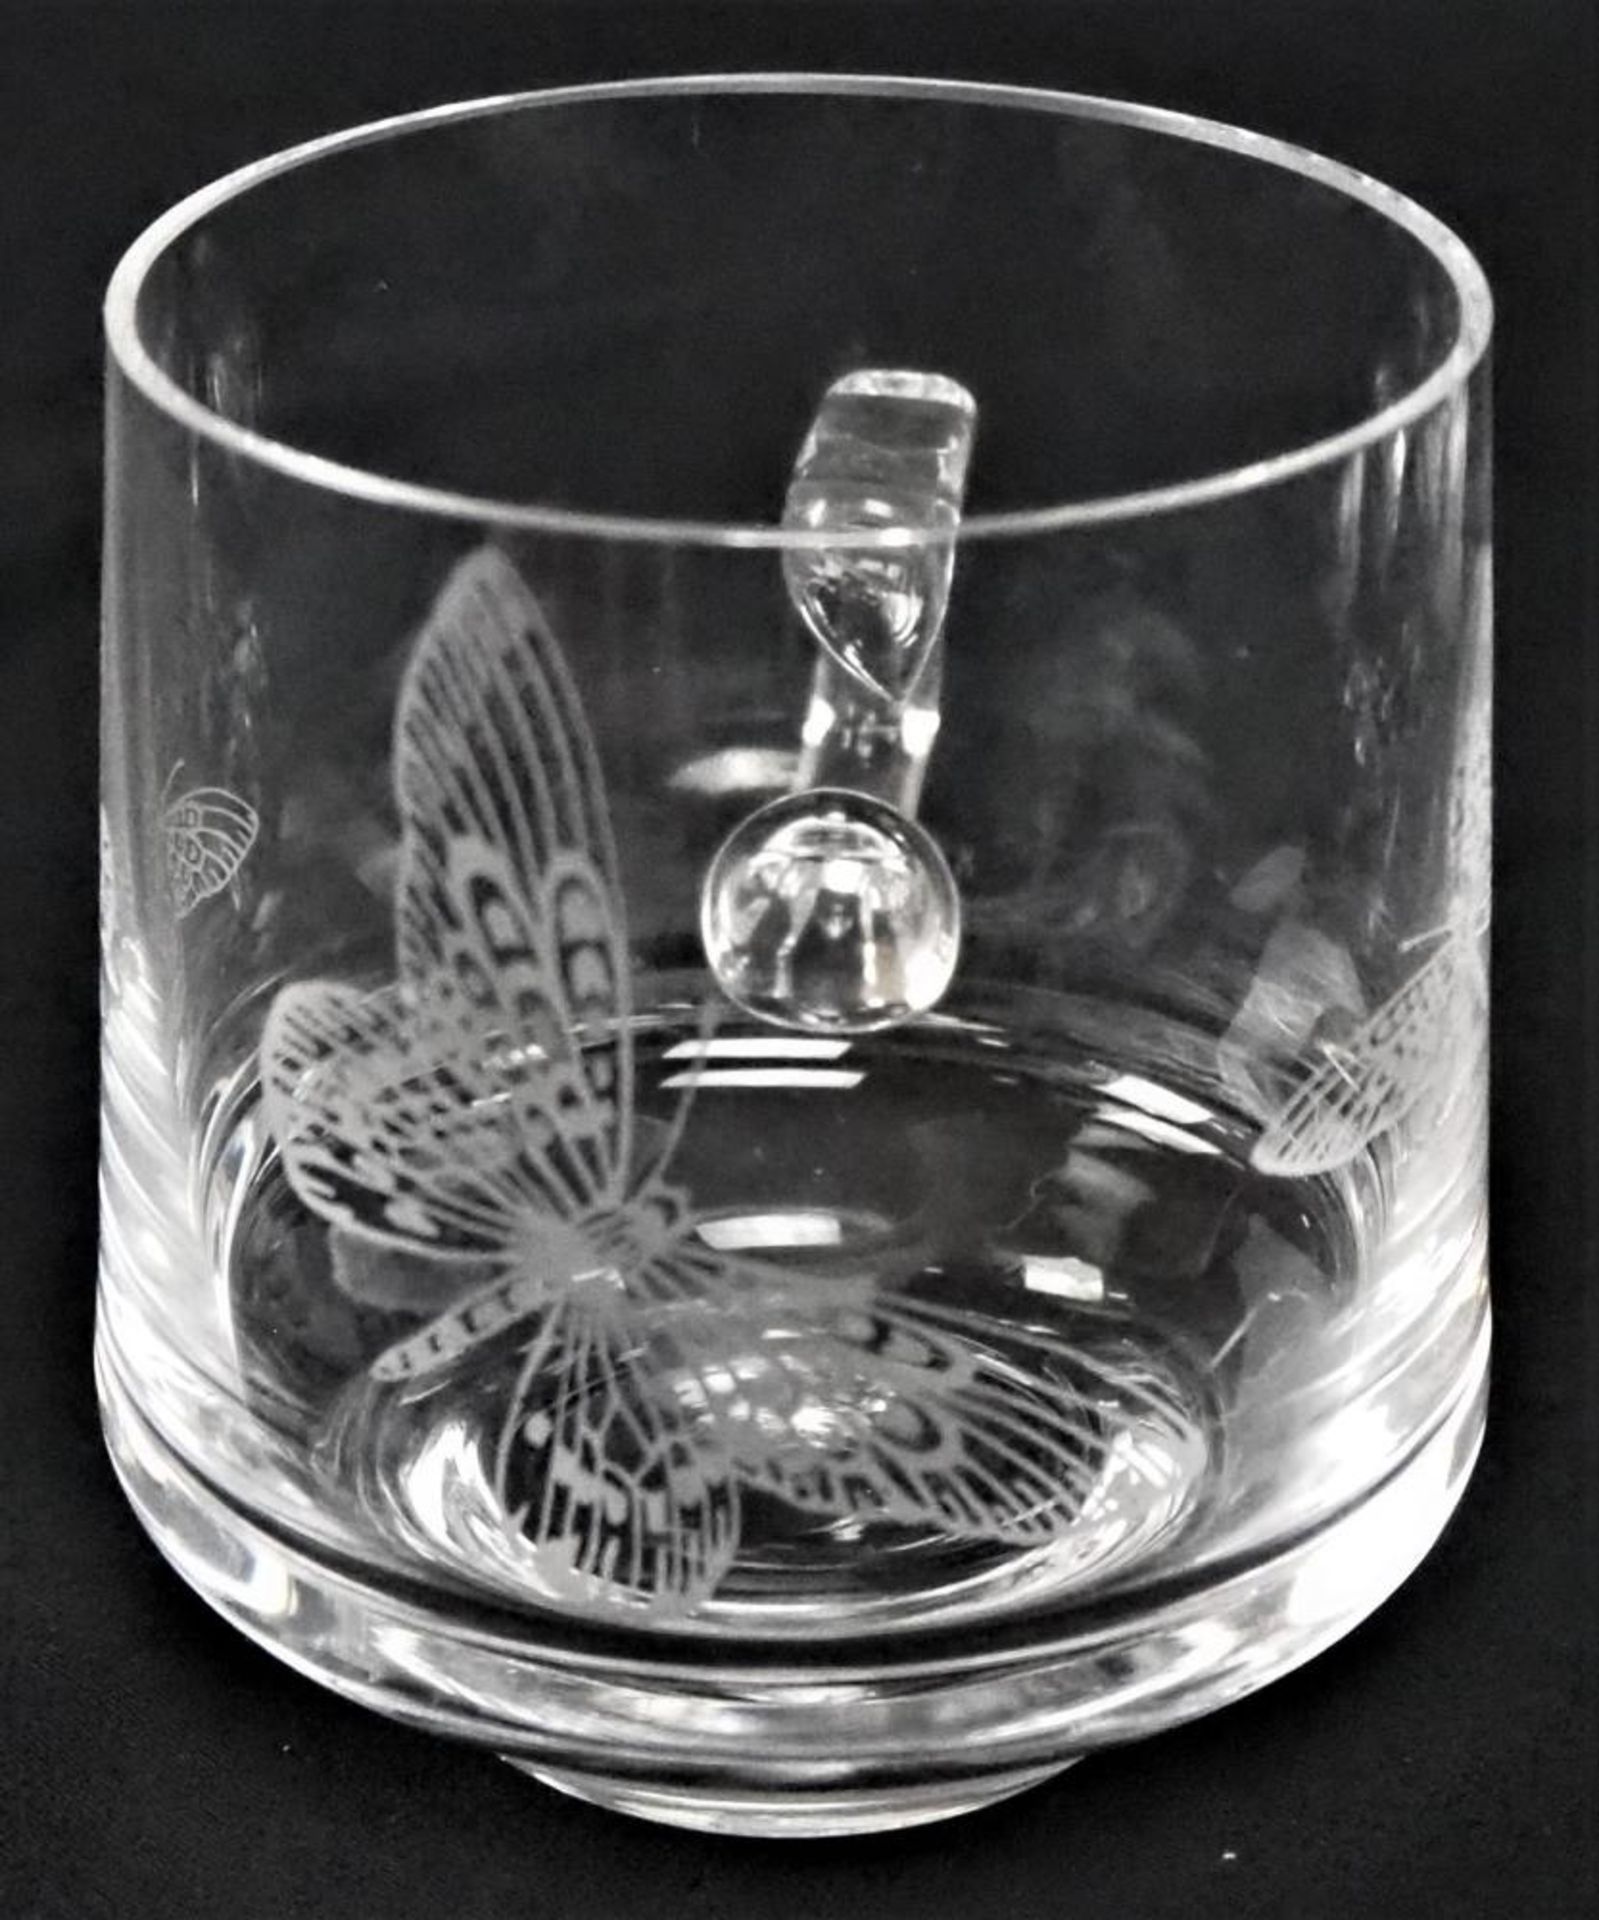 Bowleset 13 teiligGebrauchsglas, dekoriert12 Gläser, 1 SchüsselGuter Zustand - Bild 2 aus 2